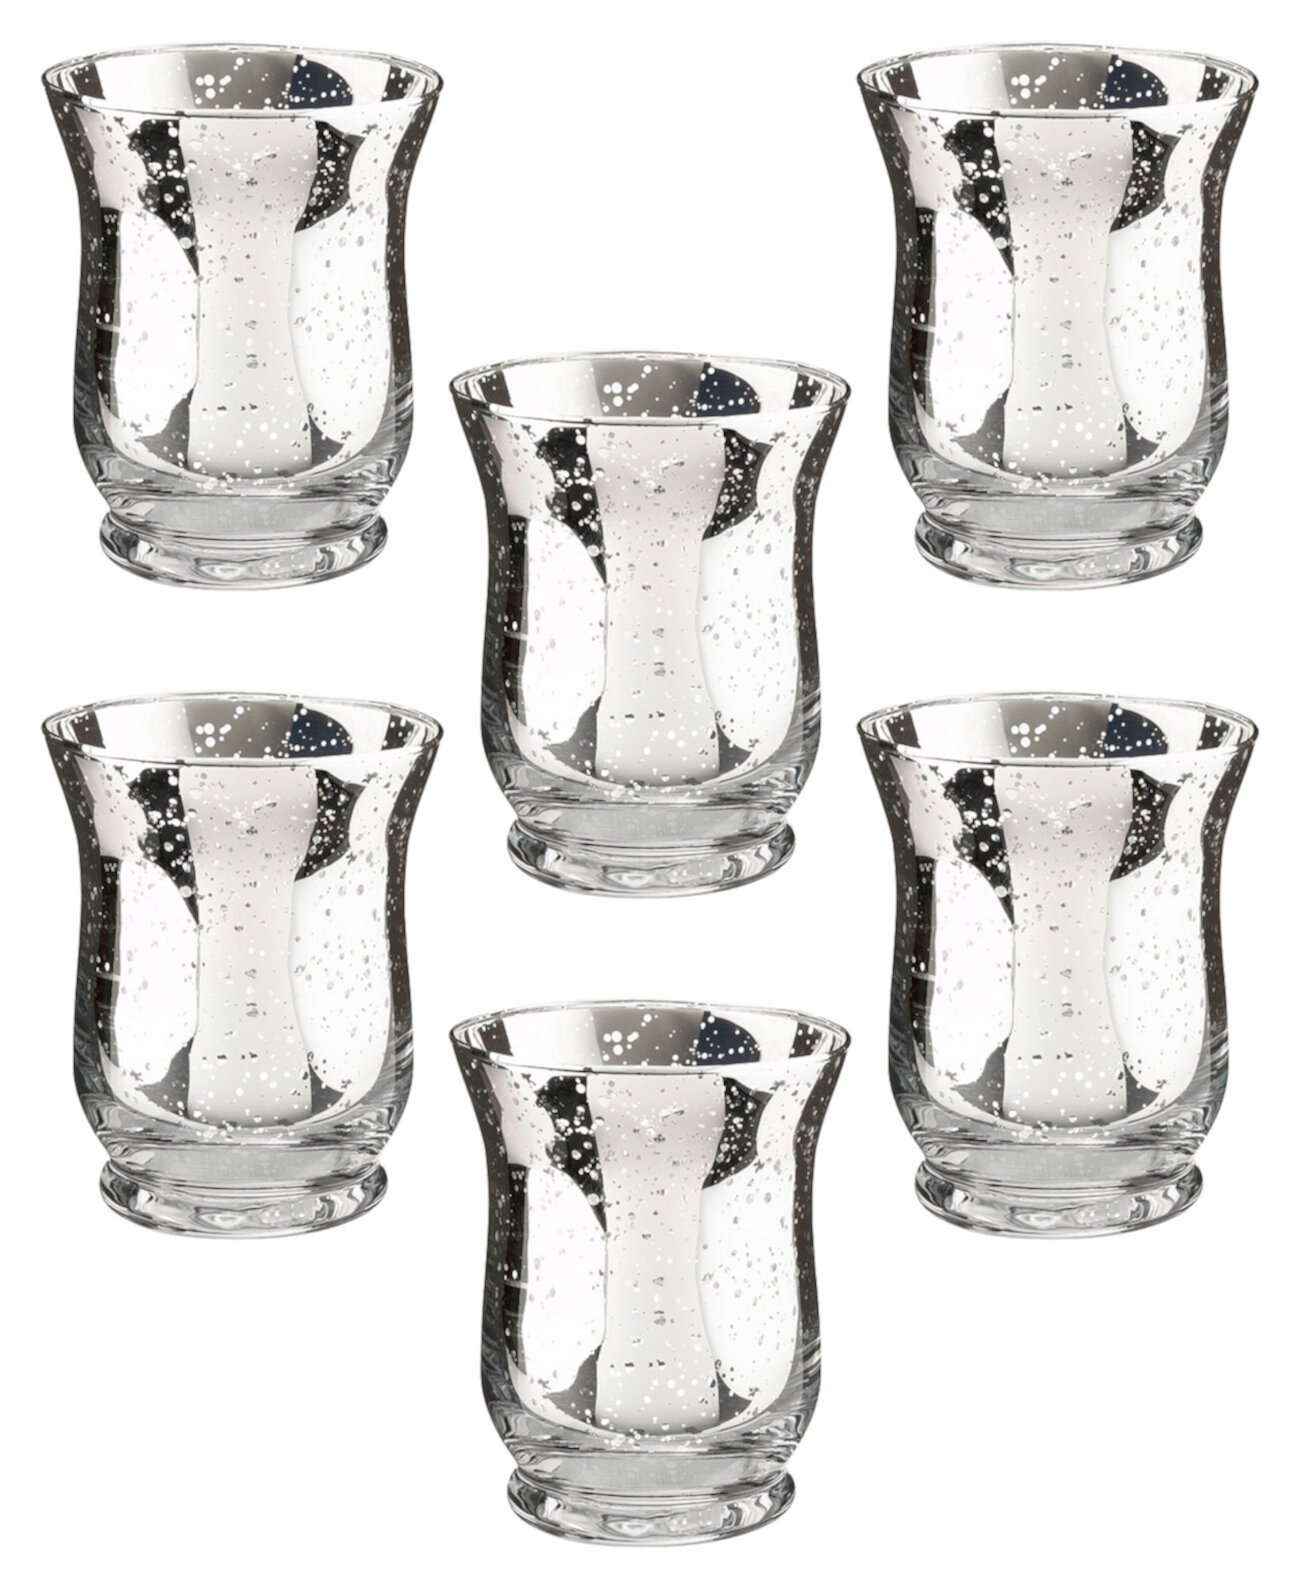 Стеклянные держатели для обета или чайных светильников в форме тюльпана Mercury, набор из 6 штук Lillian Rose